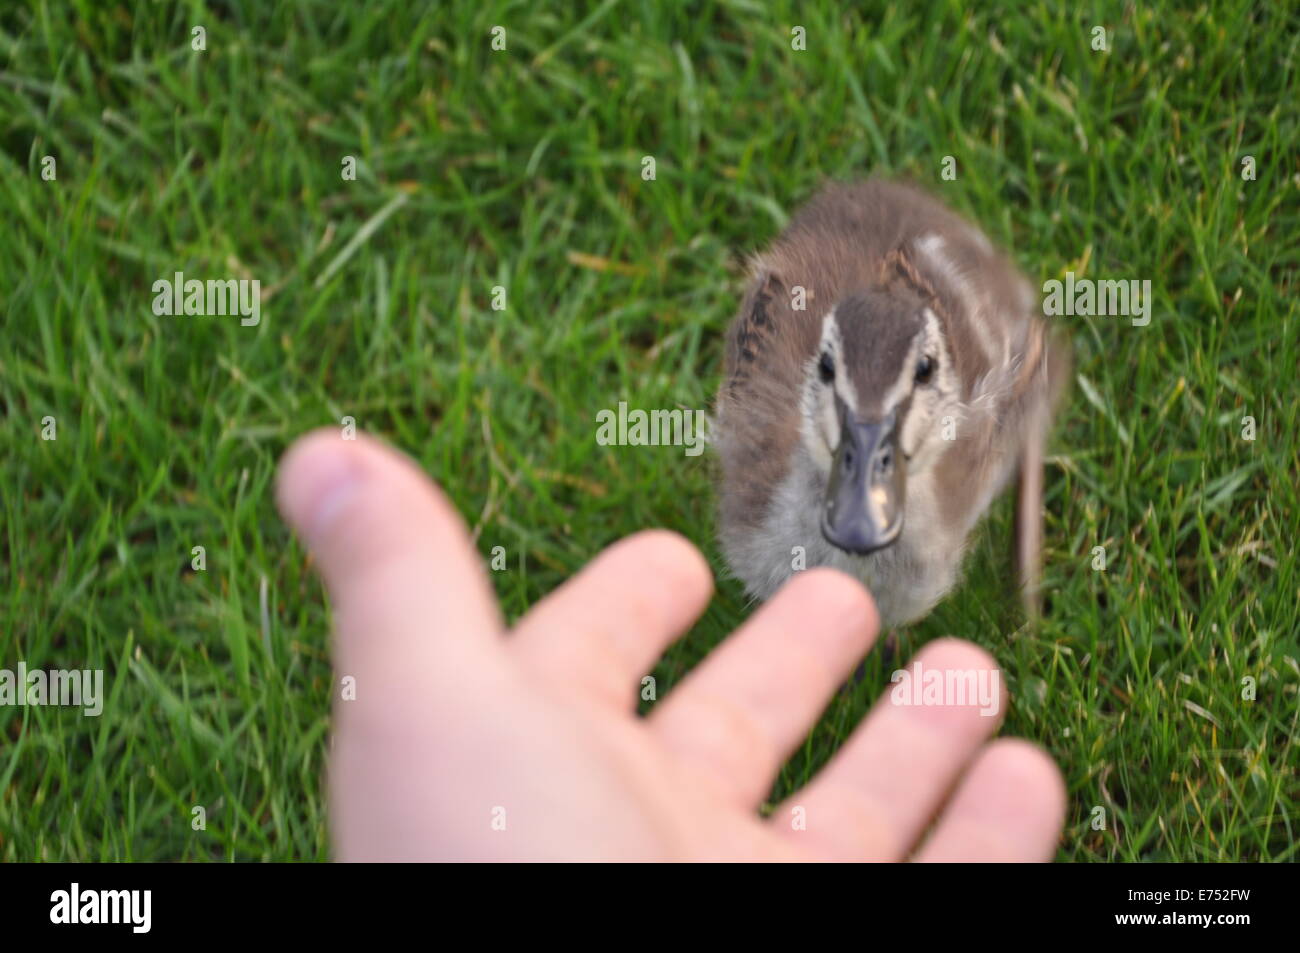 Junge Ente stehend auf dem Rasen, Blick auf die Hand eines Mannes Stockfoto